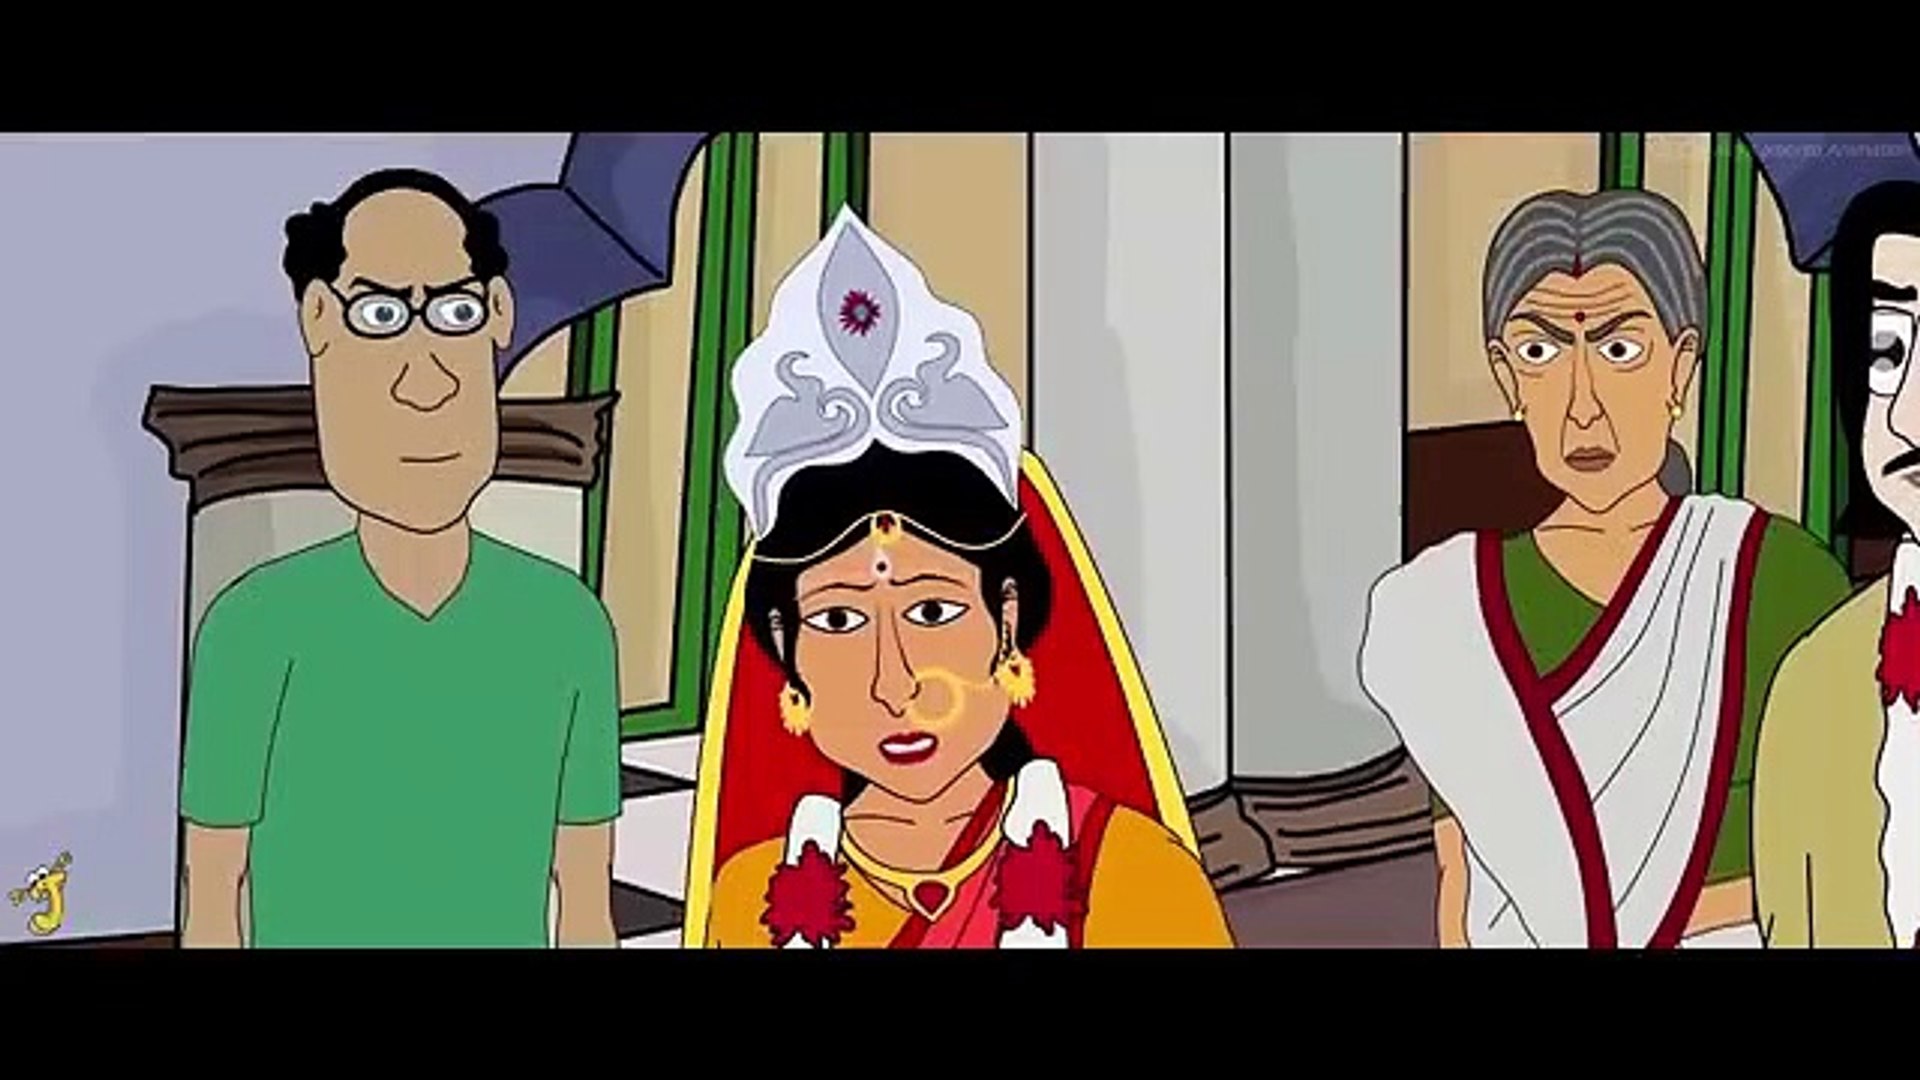 Adharer_Chorakuthuri_-_Bhuter_Golpo___Horror_Story___Bangla_Animation___Haunted_House___ Scary___JAS(360p) - video Dailymotion